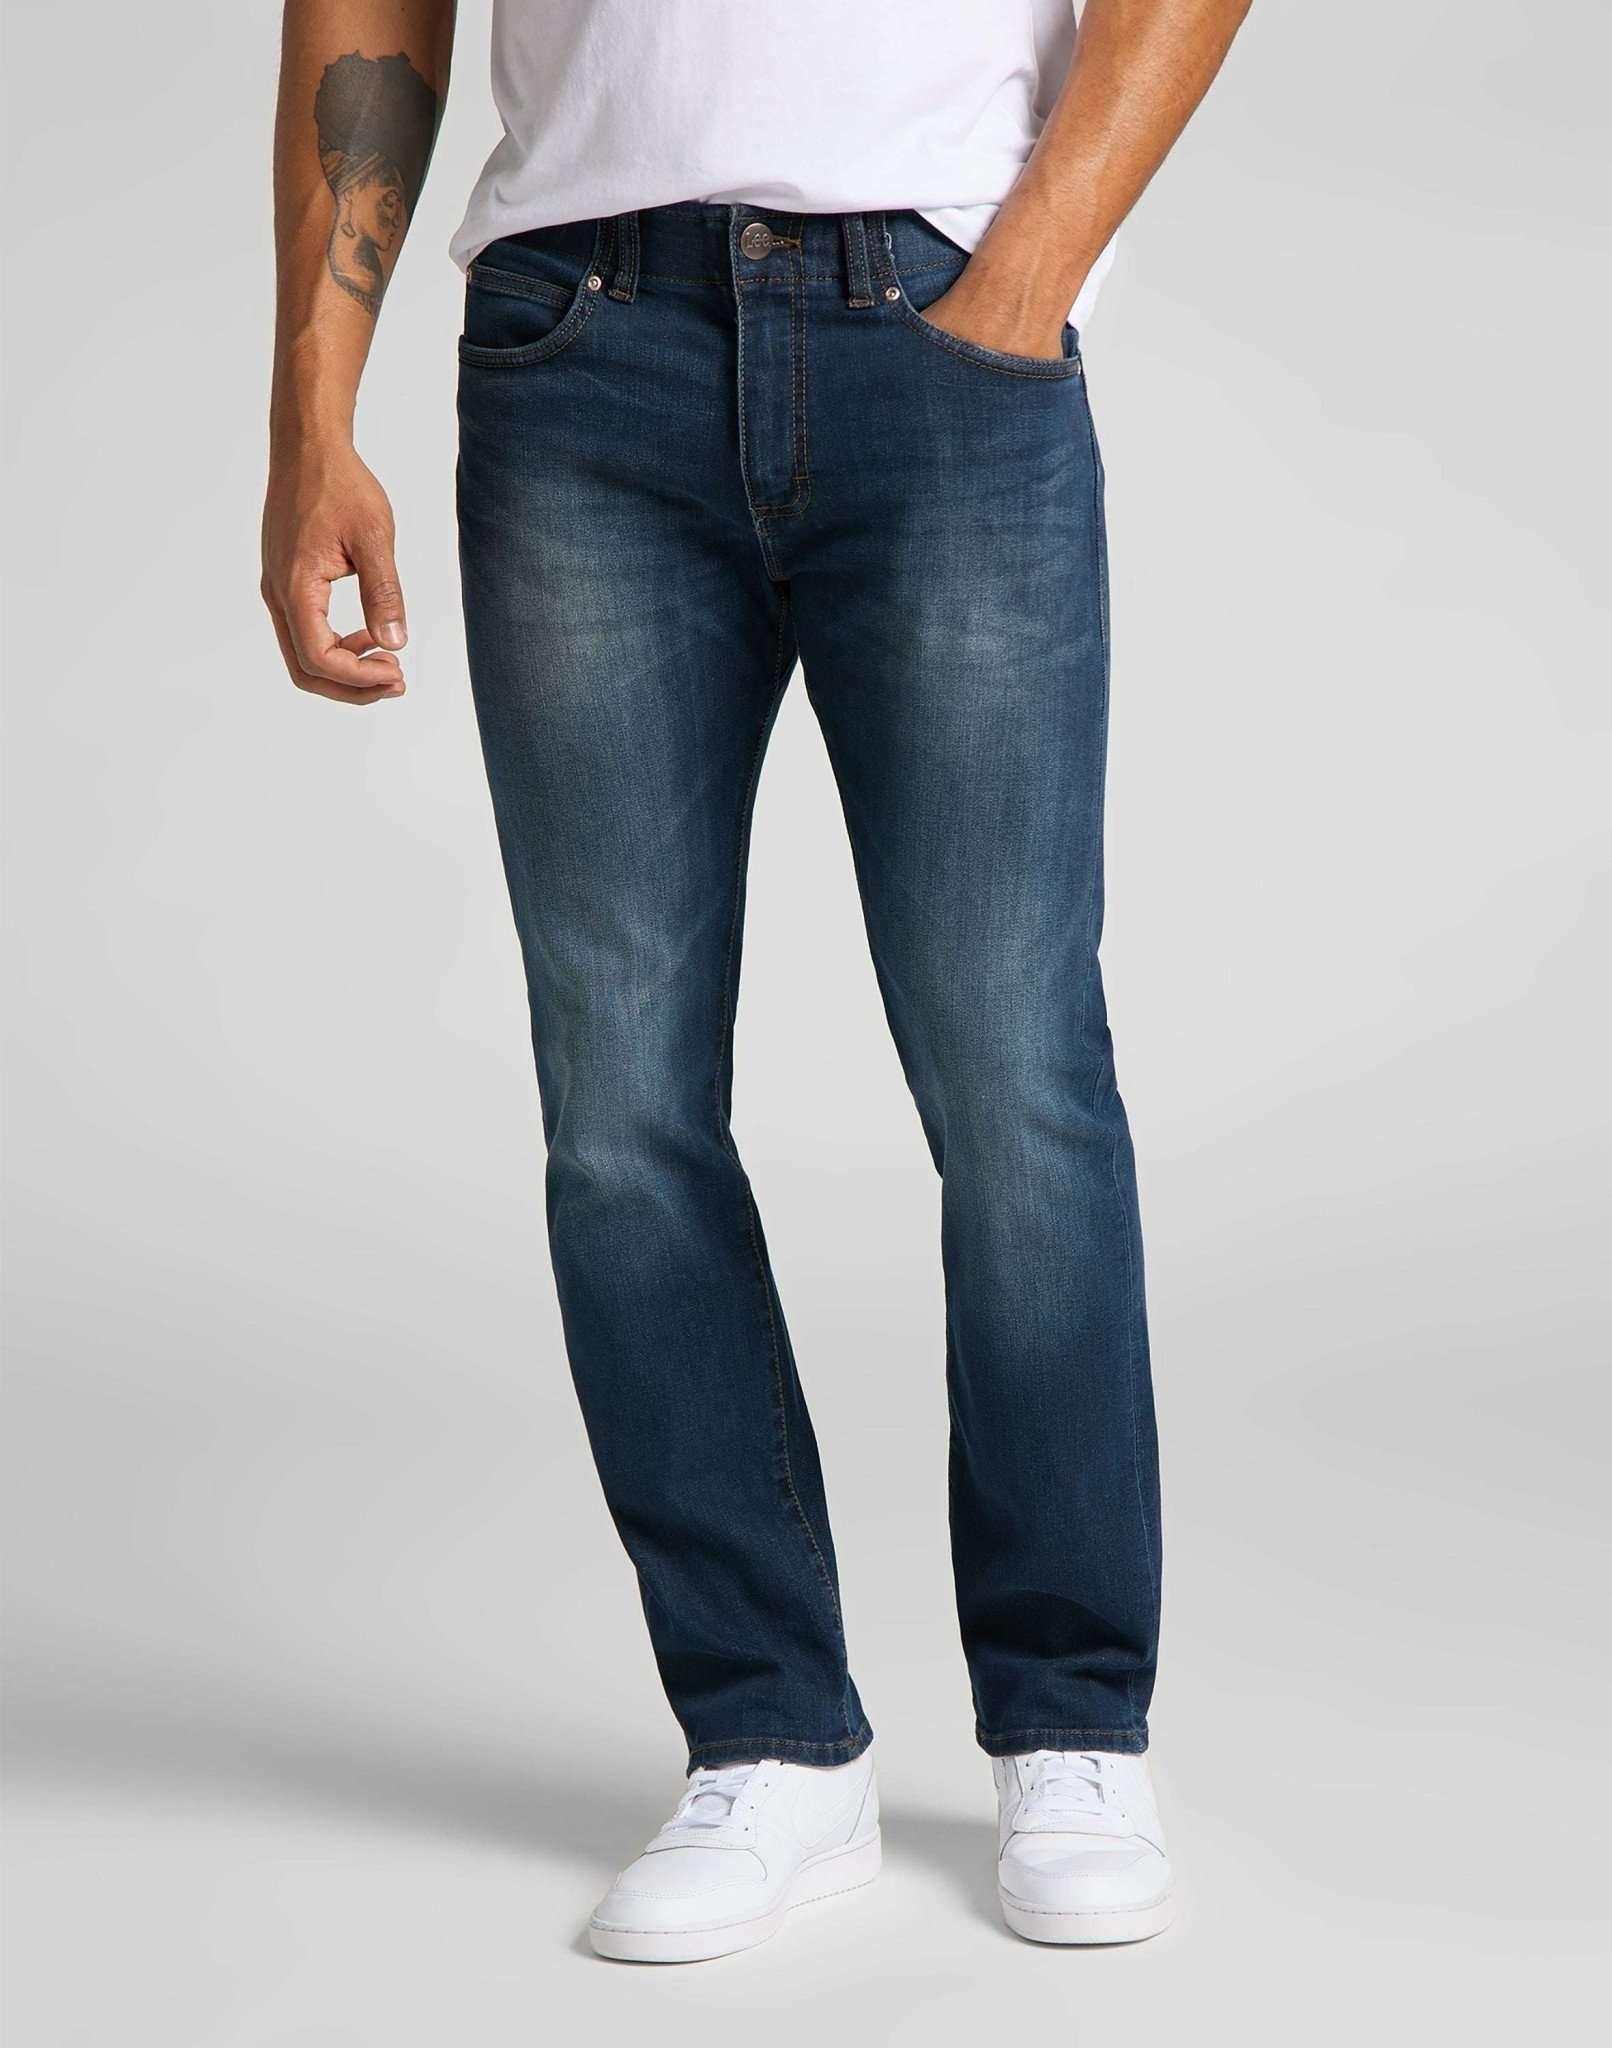 Jeans Slim Fit Mvp Herren Blau Denim L34/W36 von Lee